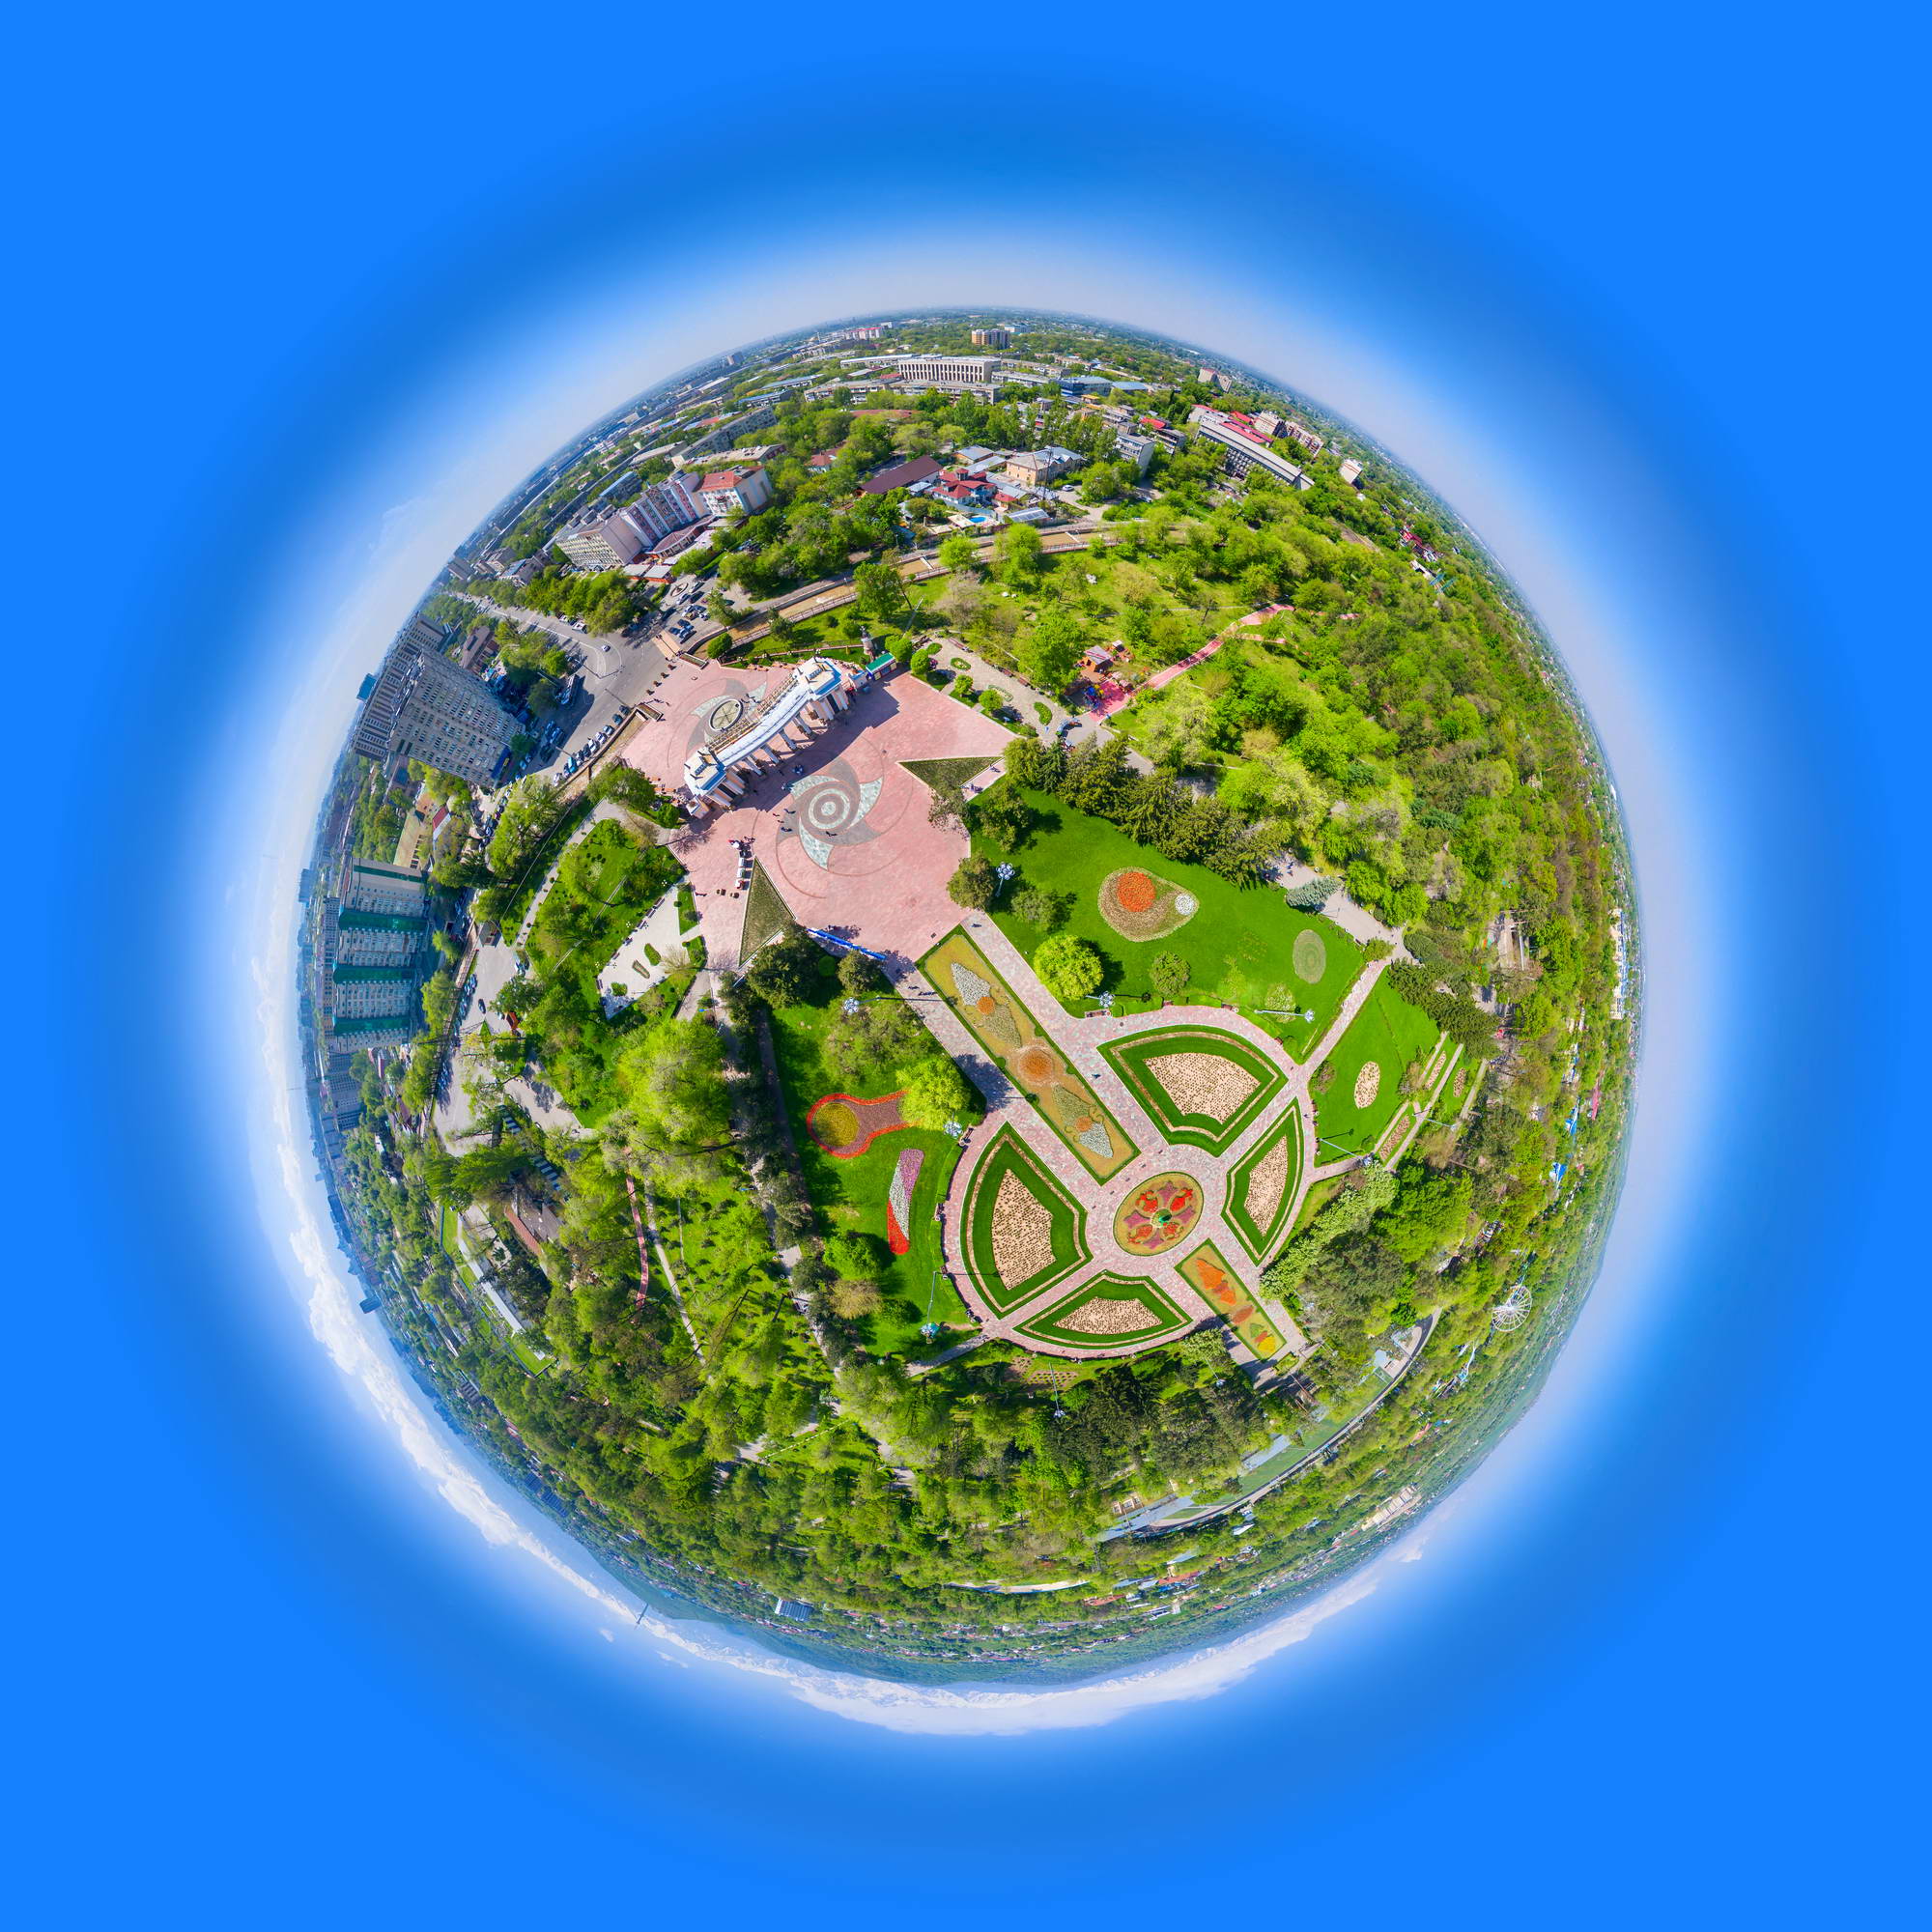 Фото Аэро-панорамы 360. Создание VR 3Д-туров с обзором 360°. Примеры работ на сайте Mir3d.kz. Интерфейс любой сложности. Публикация панорам на картах Google и Yandex.